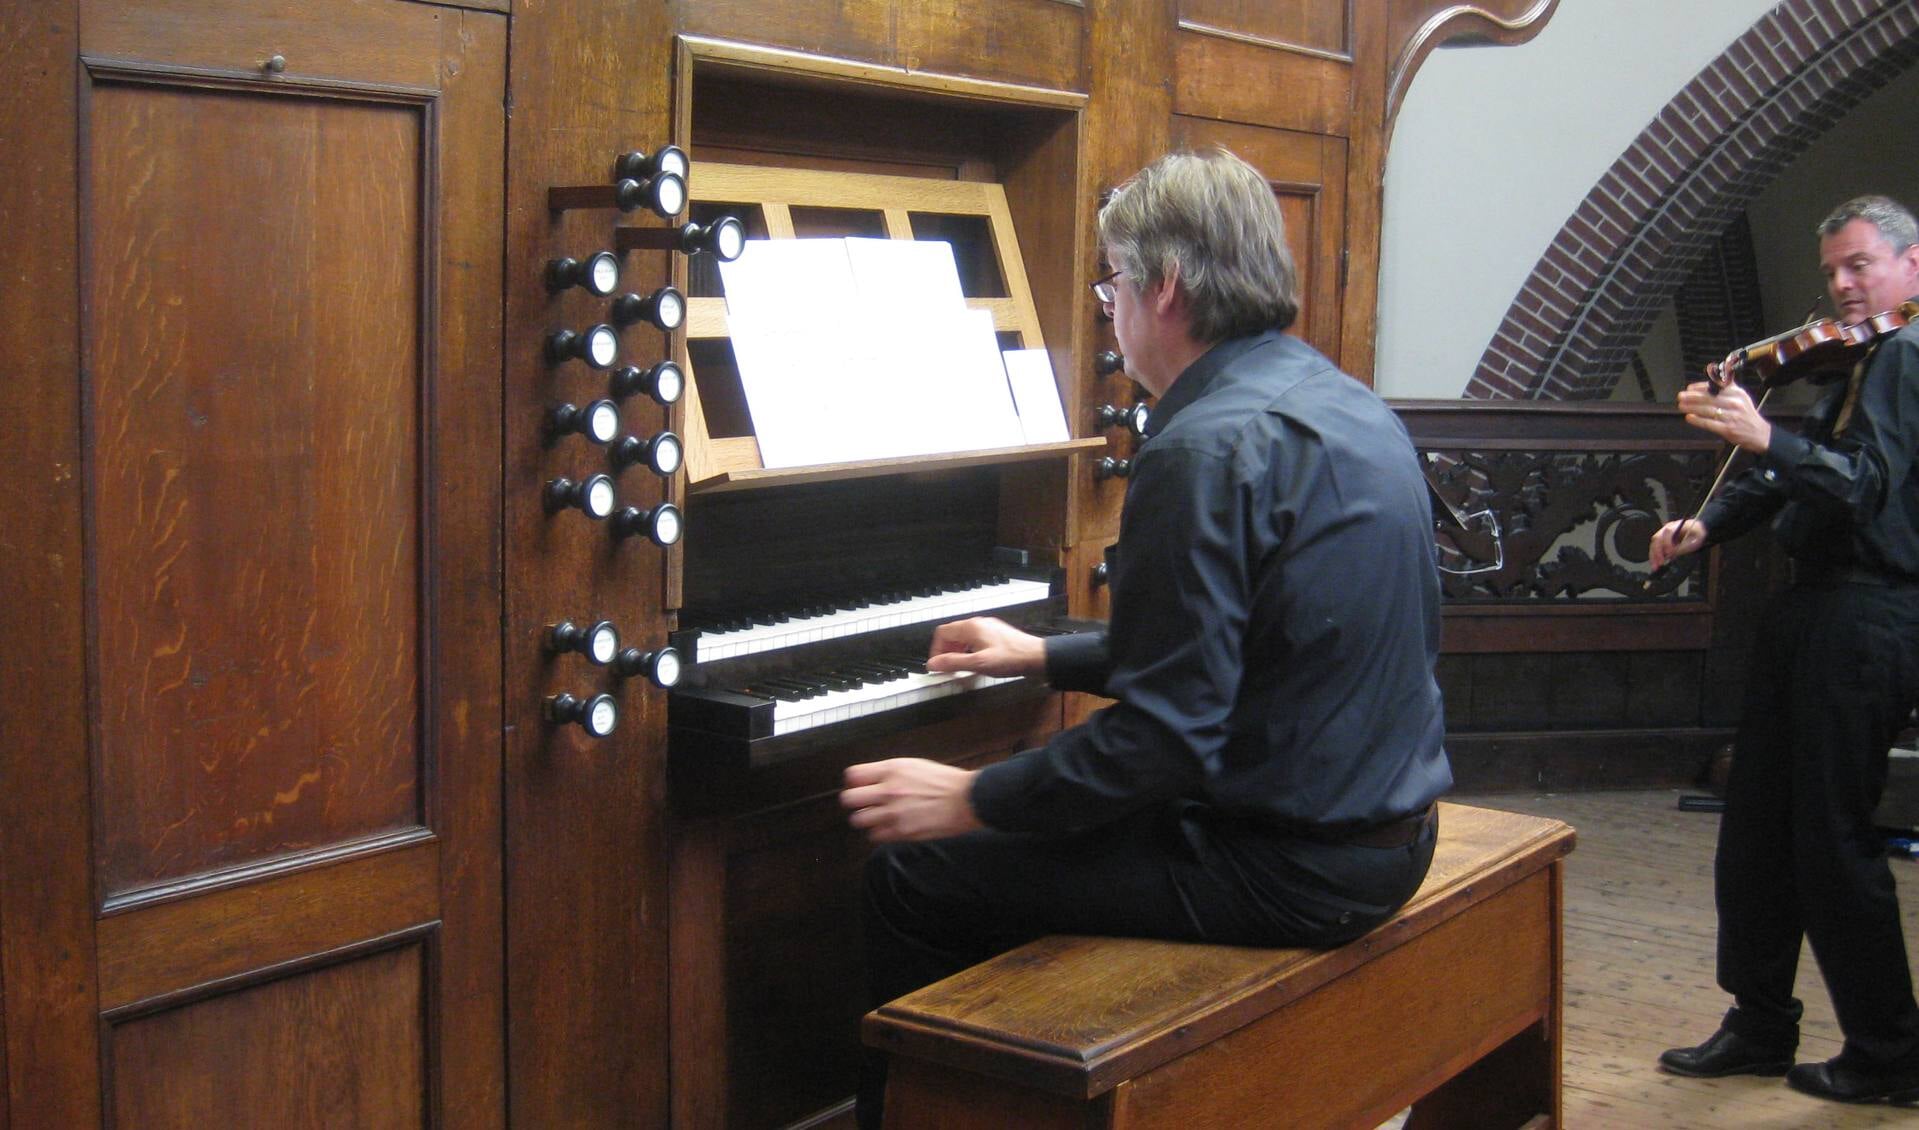 De hele zomer vinden er weer orgelconcerten plaats in Rooi.